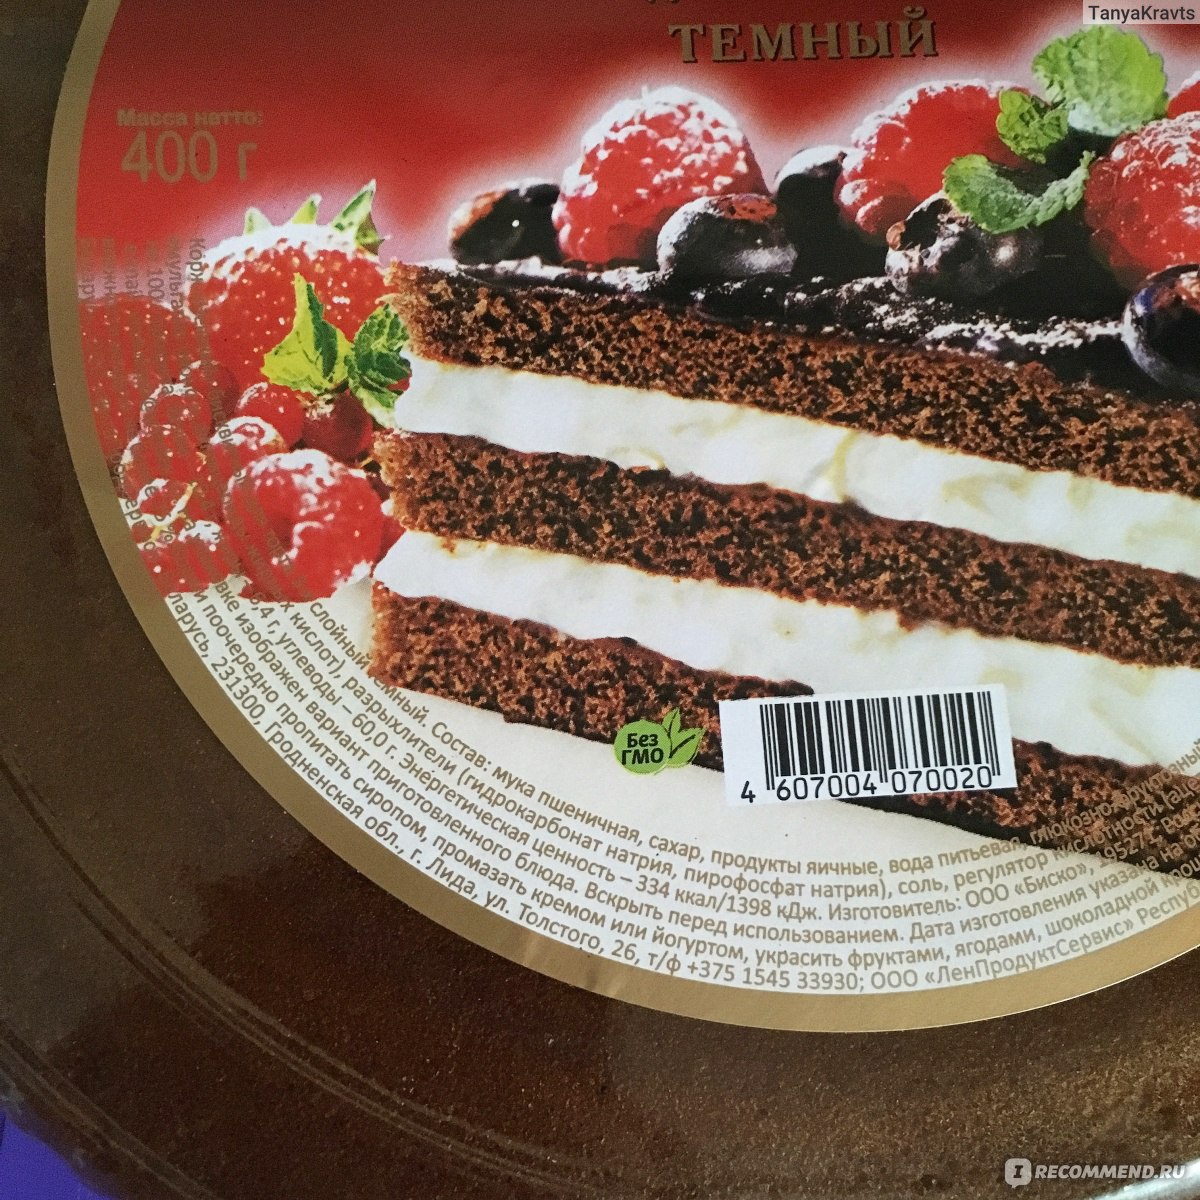 Шоколадный торт с клубникой — рецепт с фото пошагово. Как сделать торт с клубникой и шоколадом?